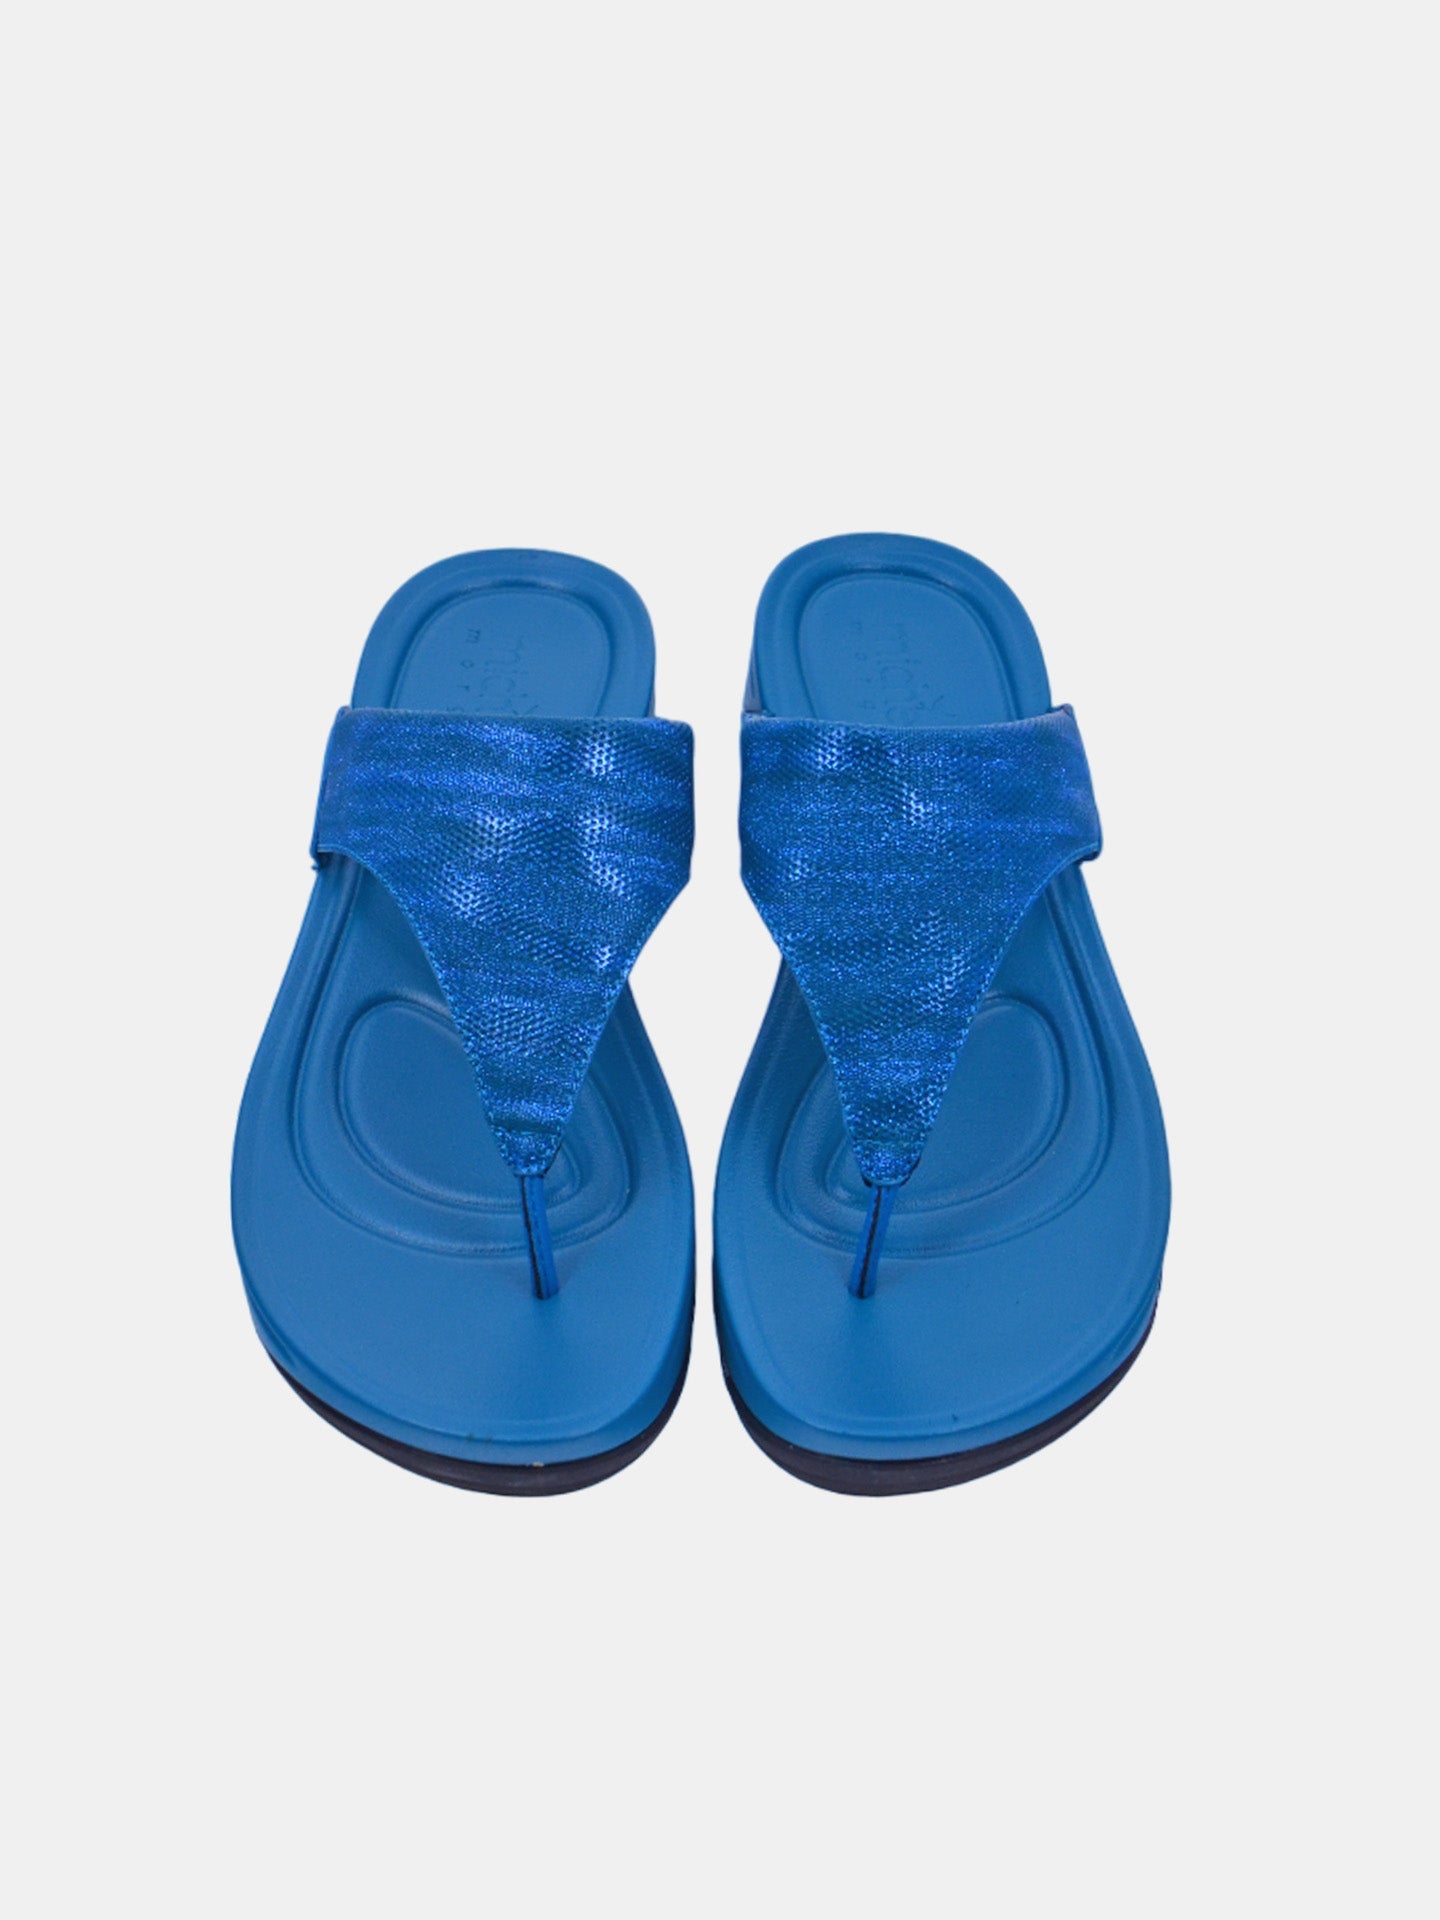 Michelle Morgan 214RJ671 Women's Sandals #color_Blue